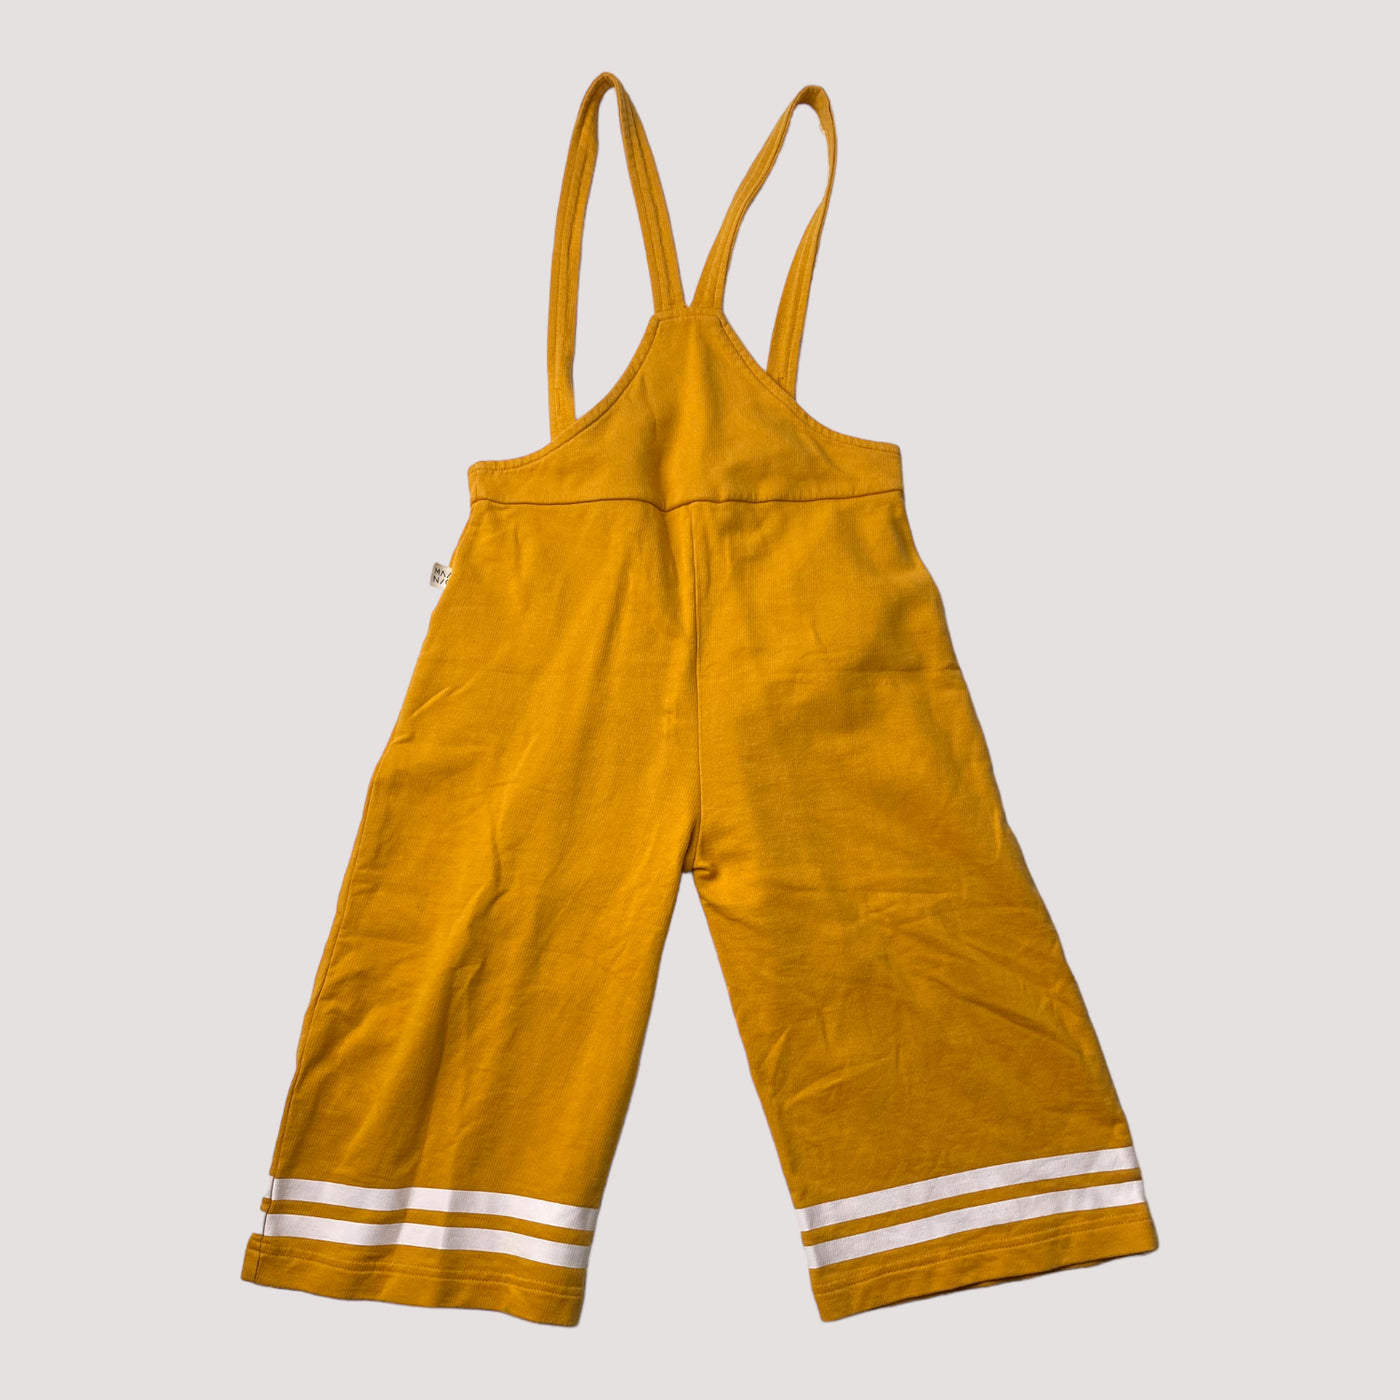 Mainio jumpsuit, orange | 134/140cm